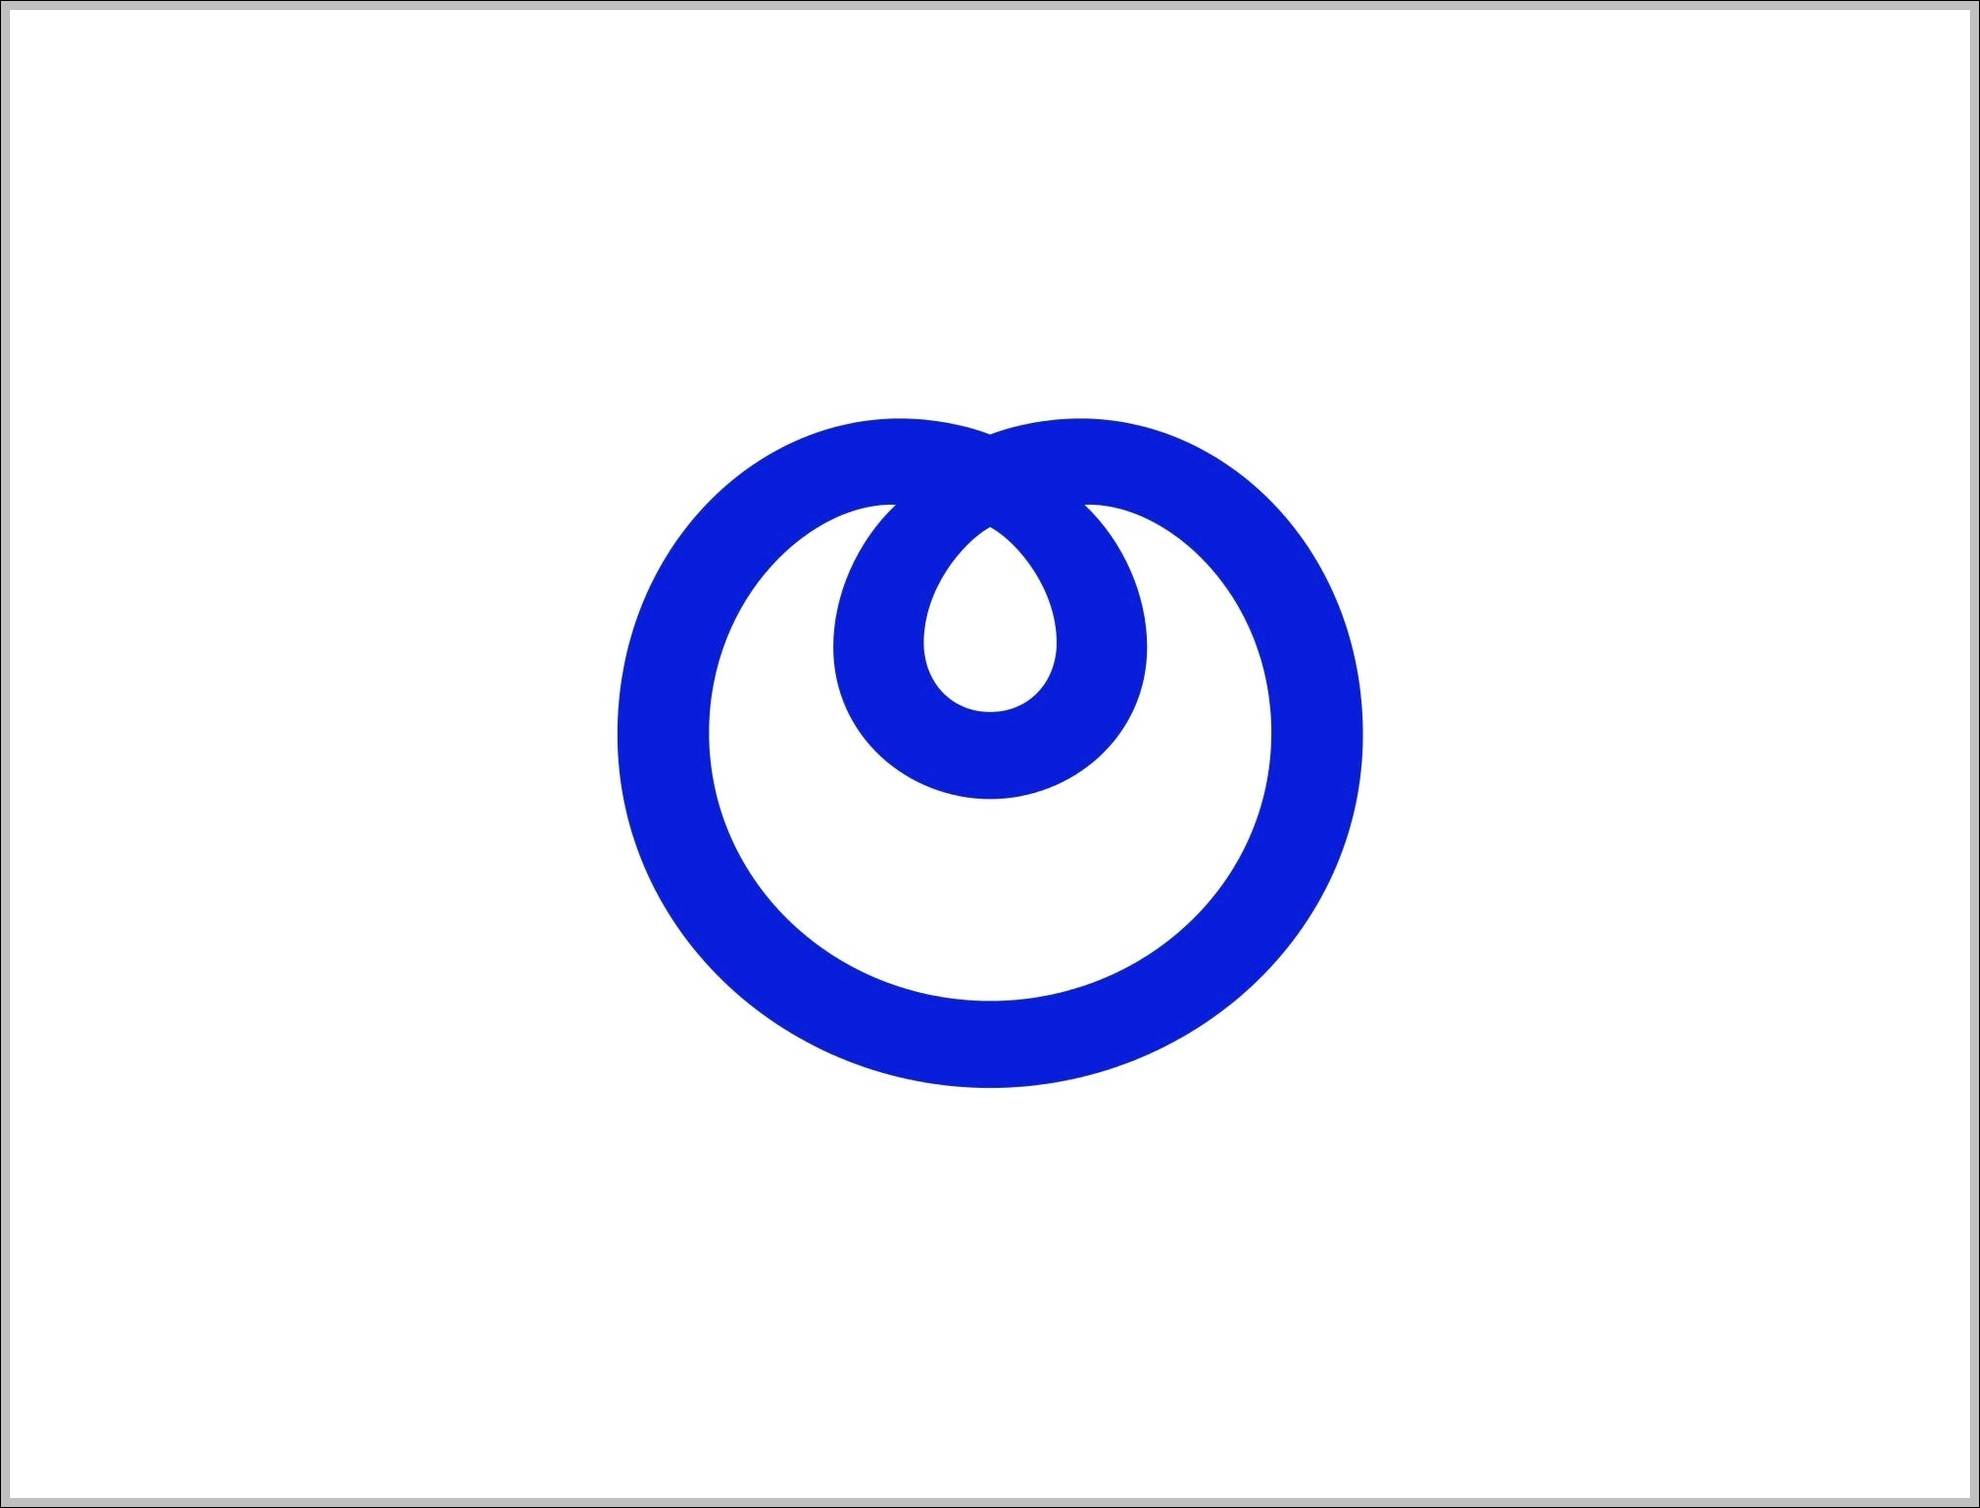 NTT Logo - NTT logo | Logo Sign - Logos, Signs, Symbols, Trademarks of ...